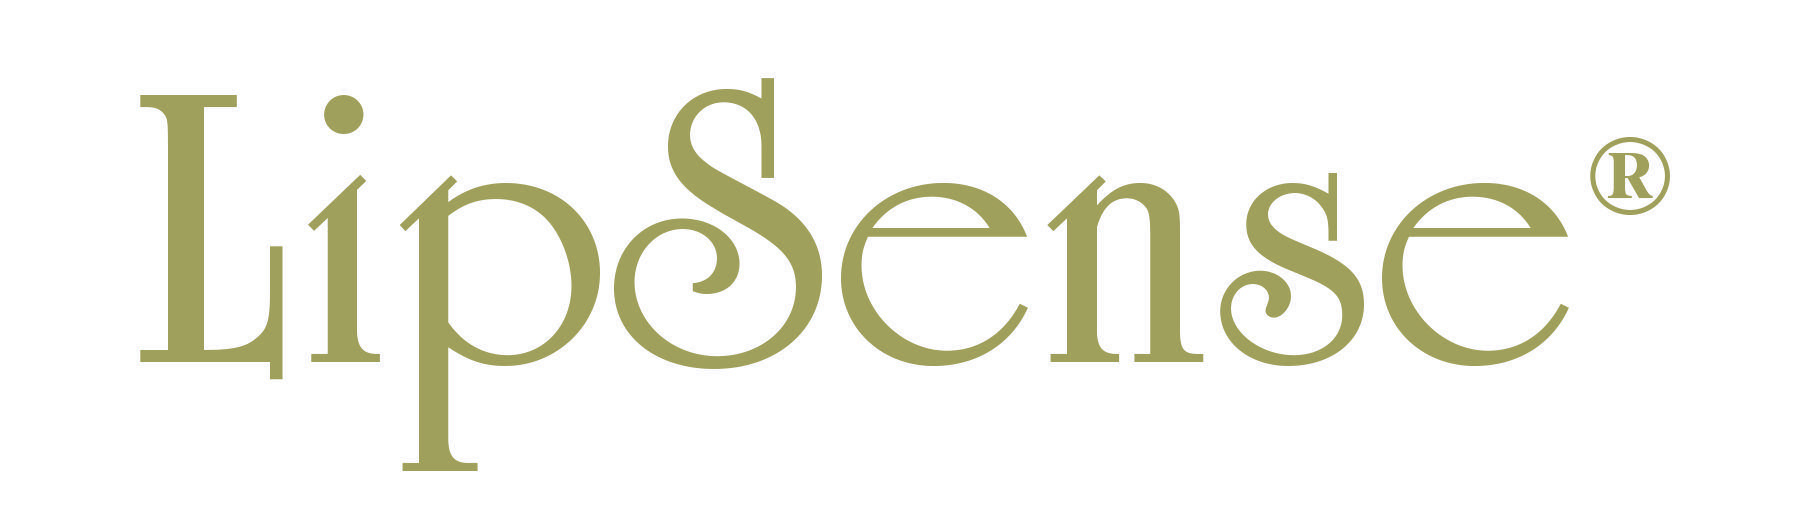 LipSense by SeneGence Logo - Lipsense Logos